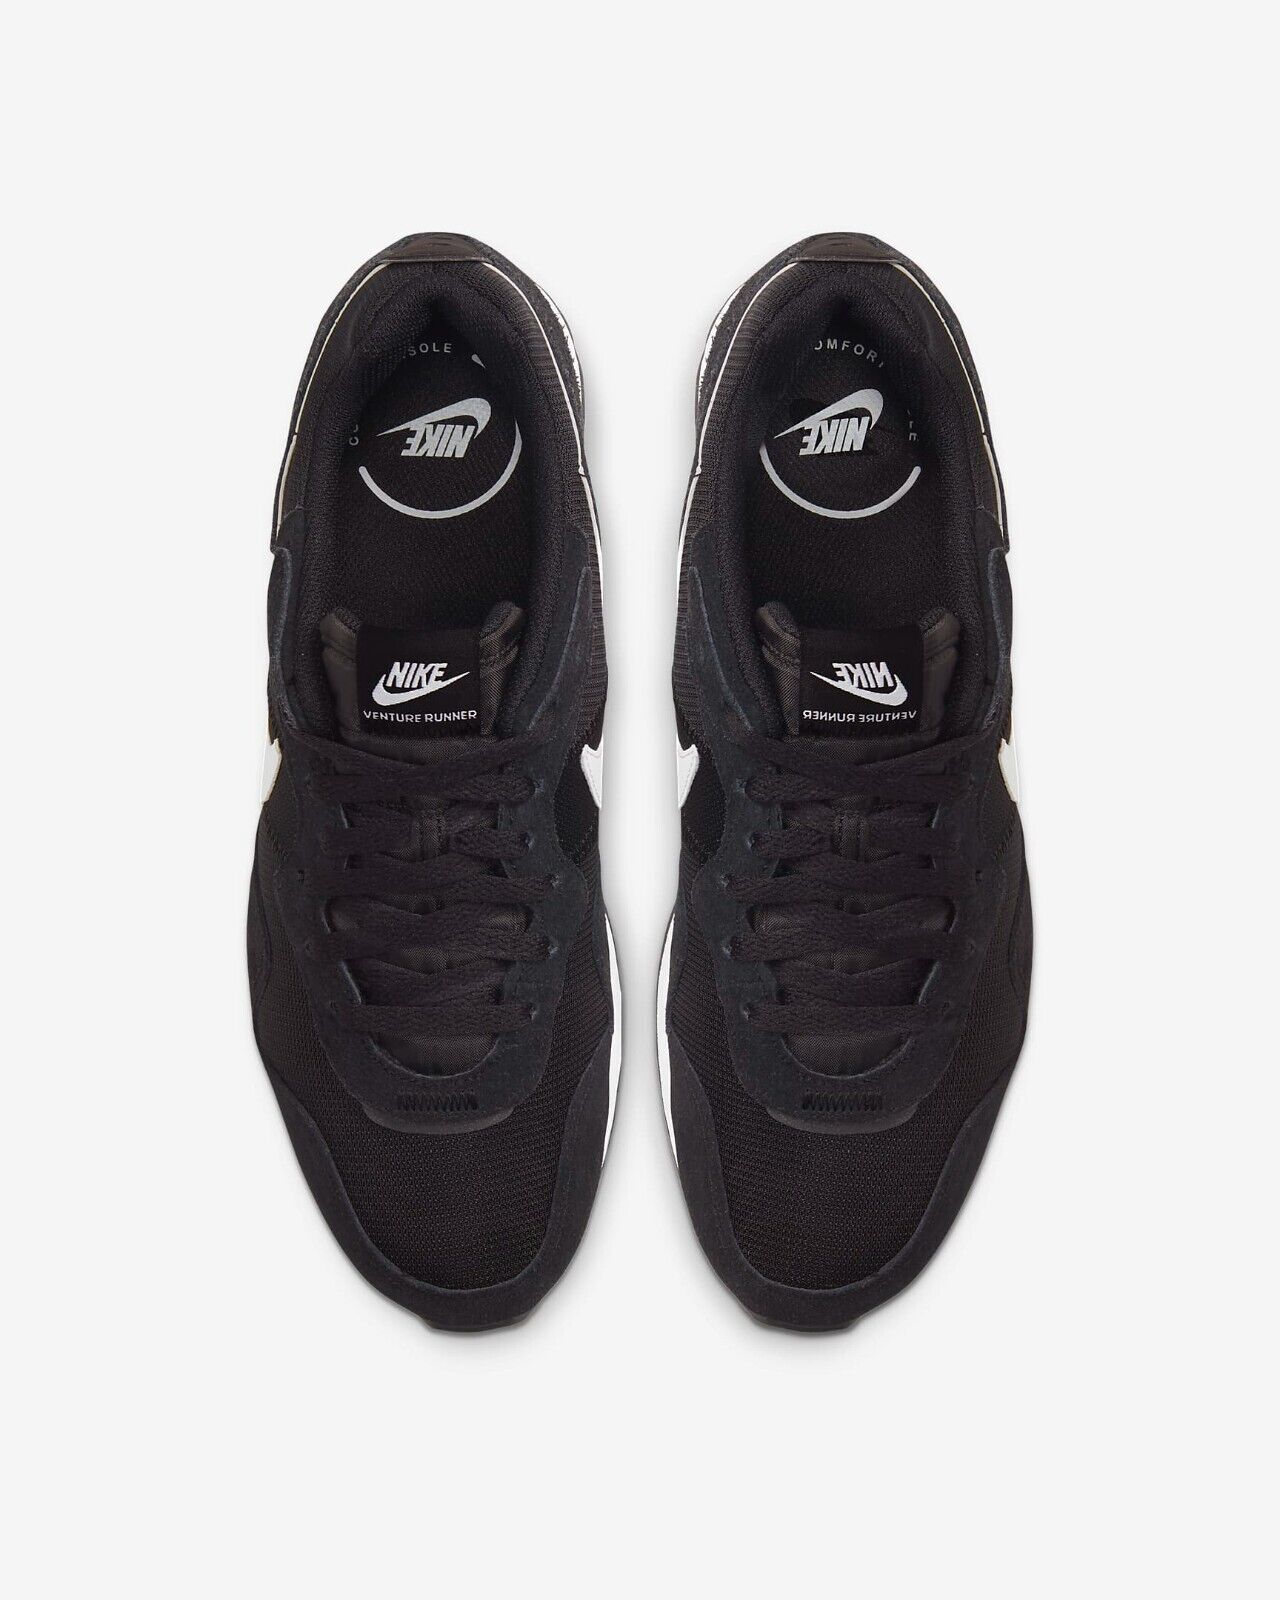 Men's Nike Venture Runner Running Shoes, CK2944 002 Multiple Sizes Black/Black/White